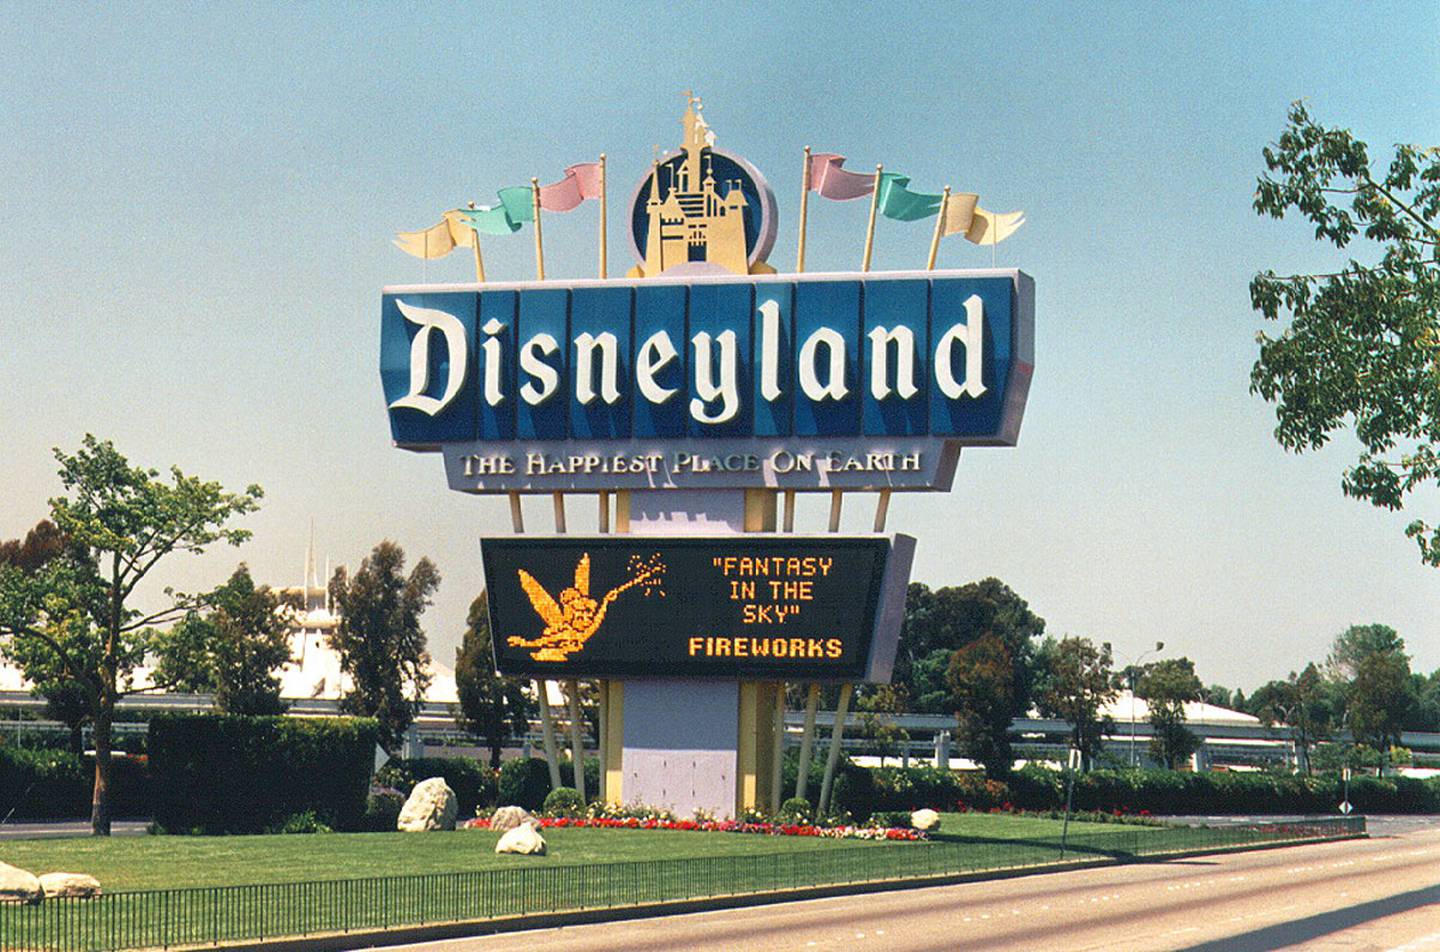 La casa de Mickey Mouse inició su oferta sin necesidad de tener un código postal específico para entrar en la promoción.